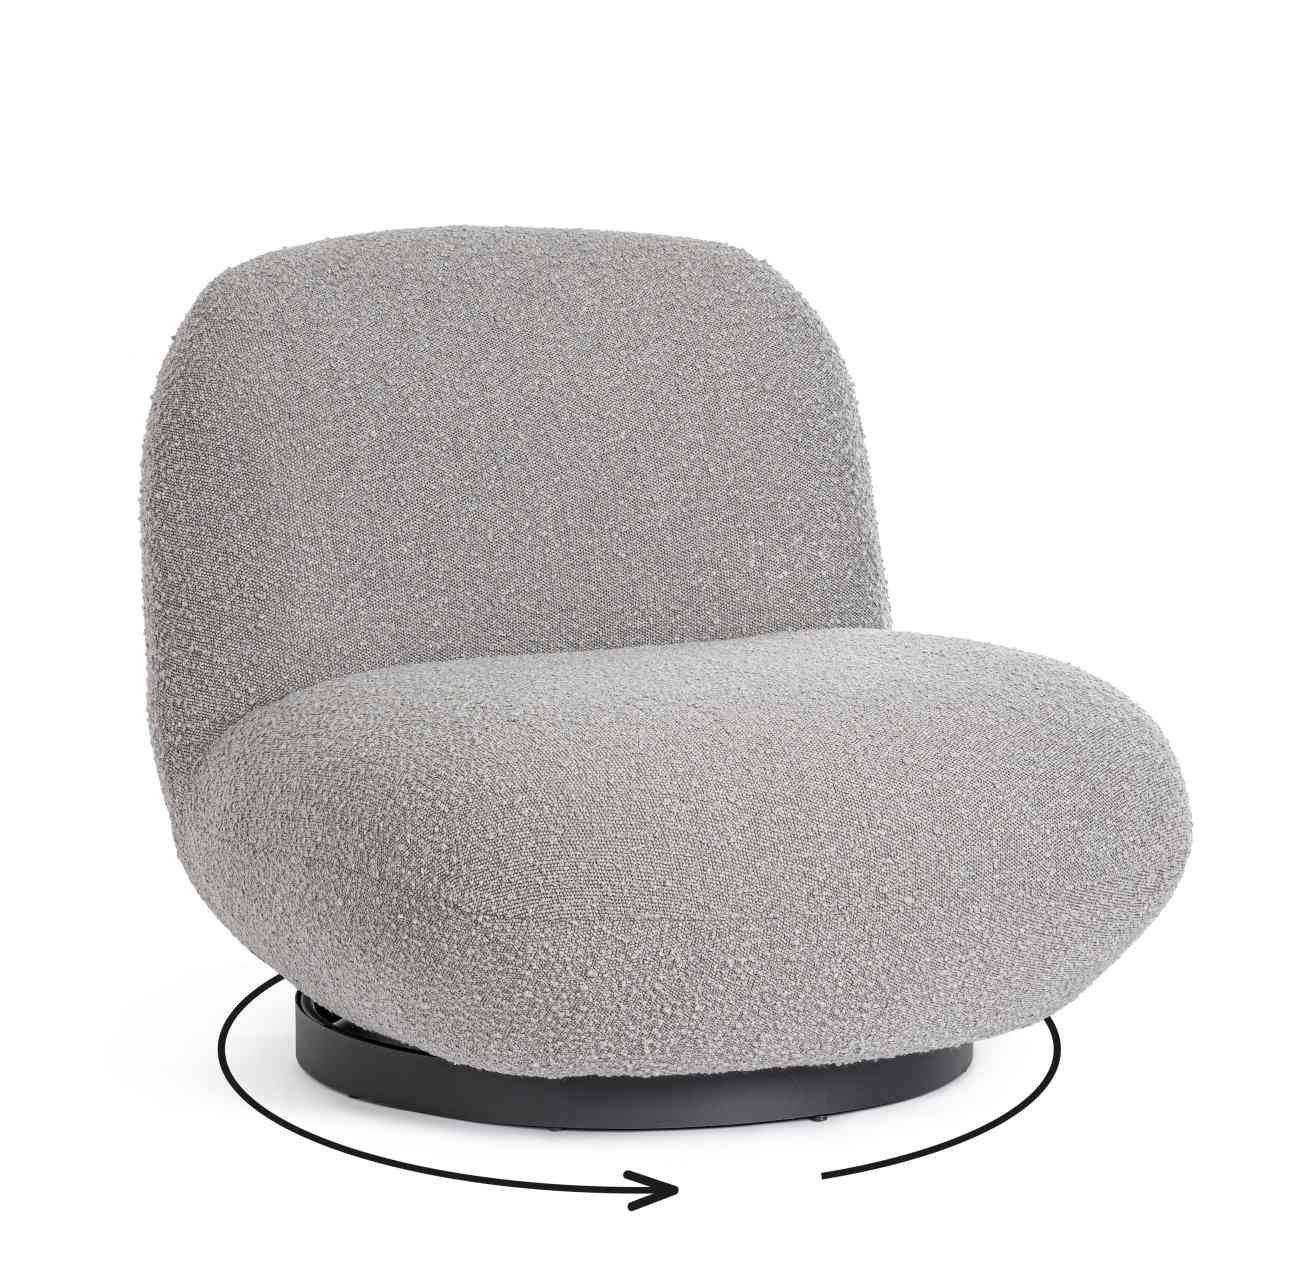 Der Sessel Margot überzeugt mit seinem modernen Stil. Gefertigt wurde er aus Bouclè-Stoff, welcher einen grauen Farbton besitzt. Das Gestell ist aus Metall und hat eine schwarze Farbe. Der Sessel verfügt über eine Drehfunktion.